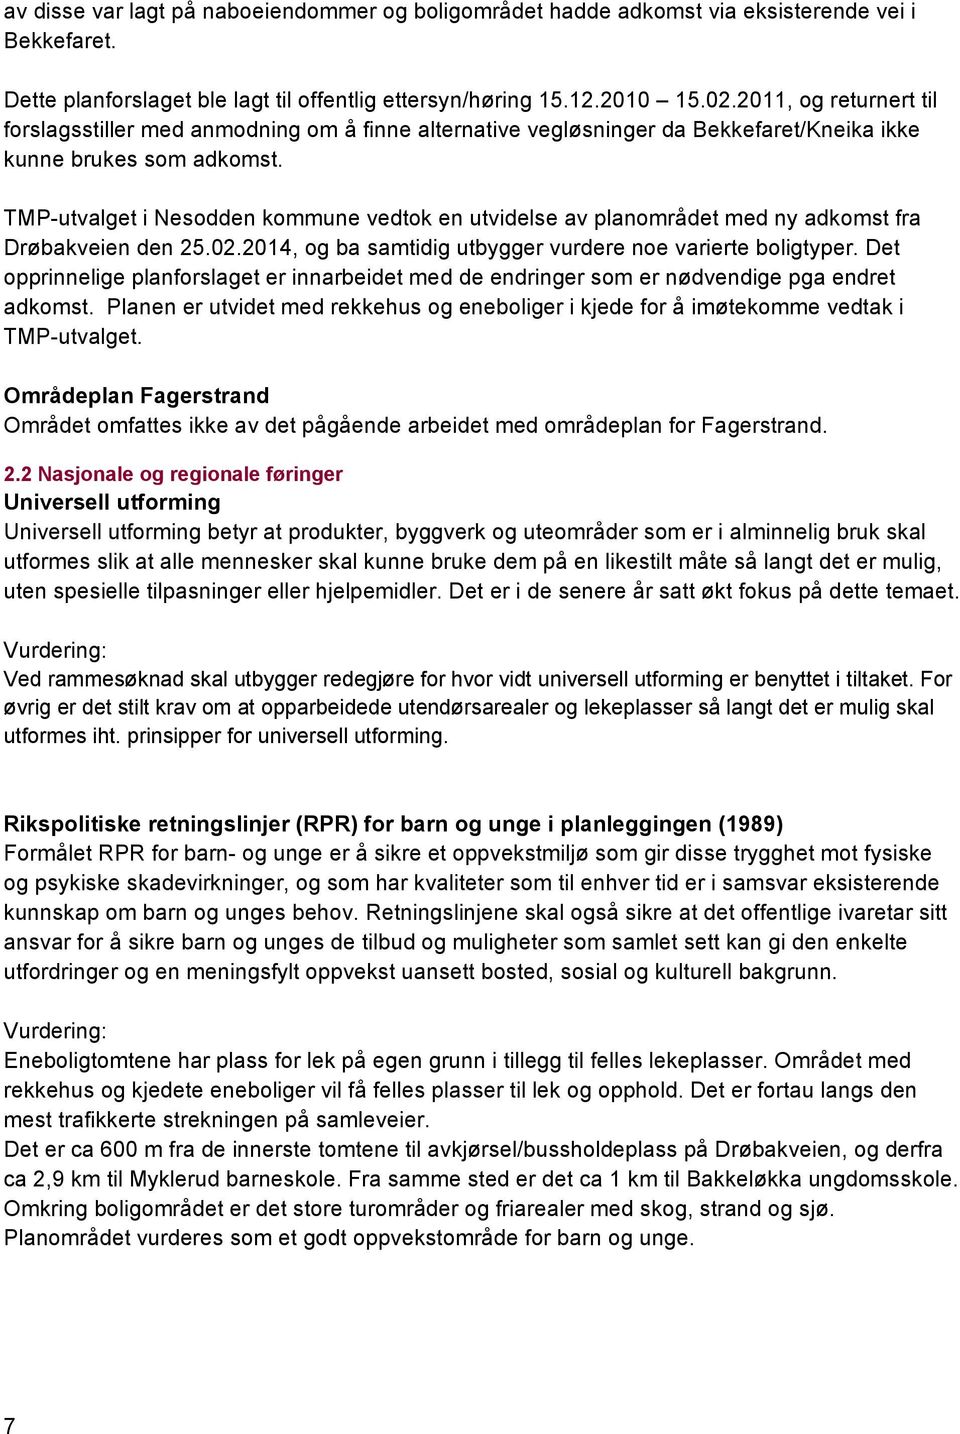 TMP-utvalget i Nesodden kommune vedtok en utvidelse av planområdet med ny adkomst fra Drøbakveien den 25.02.2014, og ba samtidig utbygger vurdere noe varierte boligtyper.